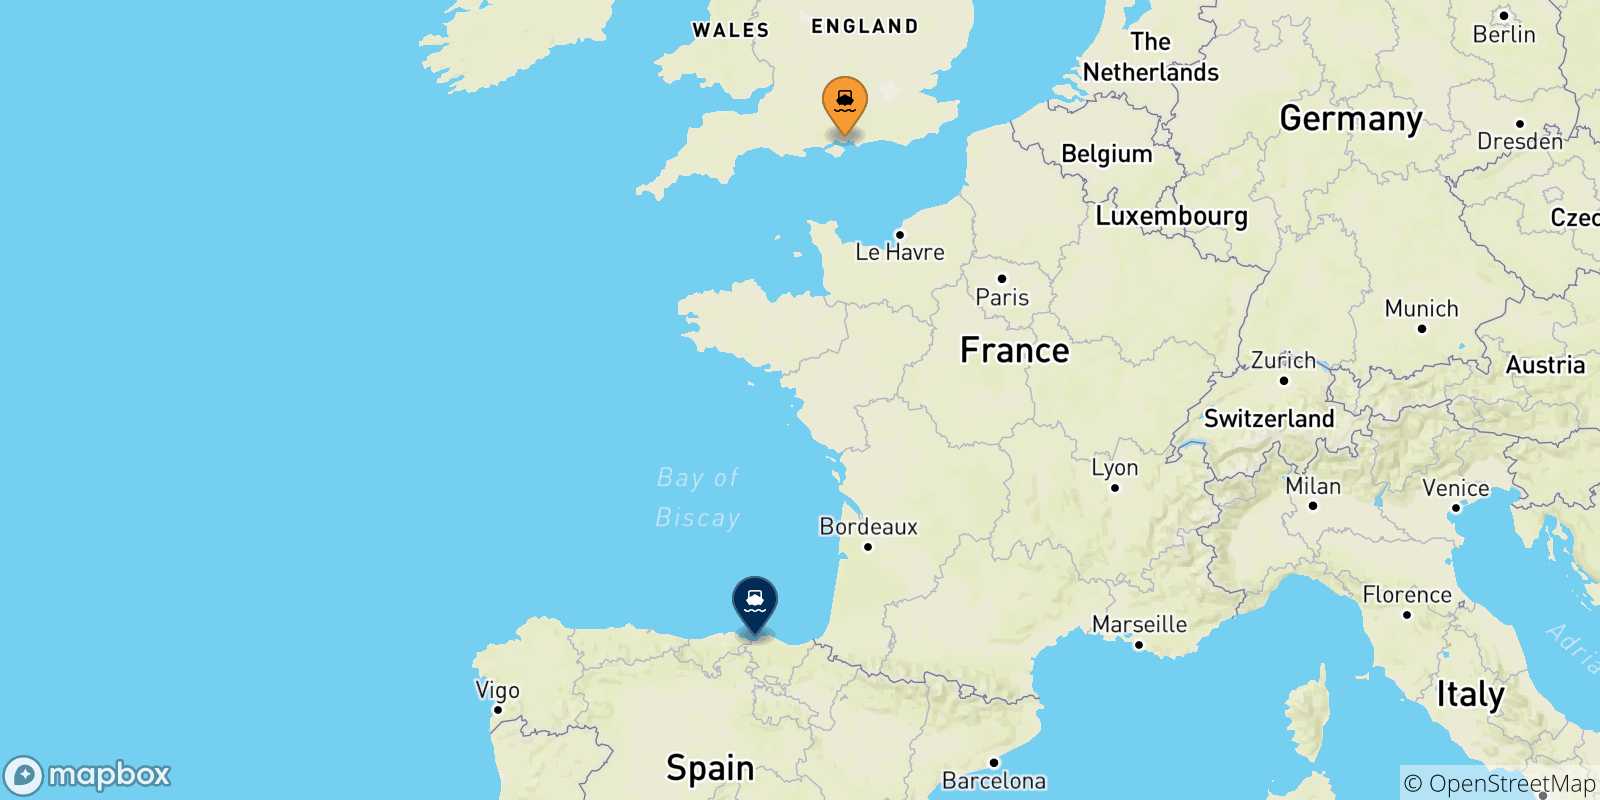 Mappa delle possibili rotte tra il Regno Unito e Bilbao